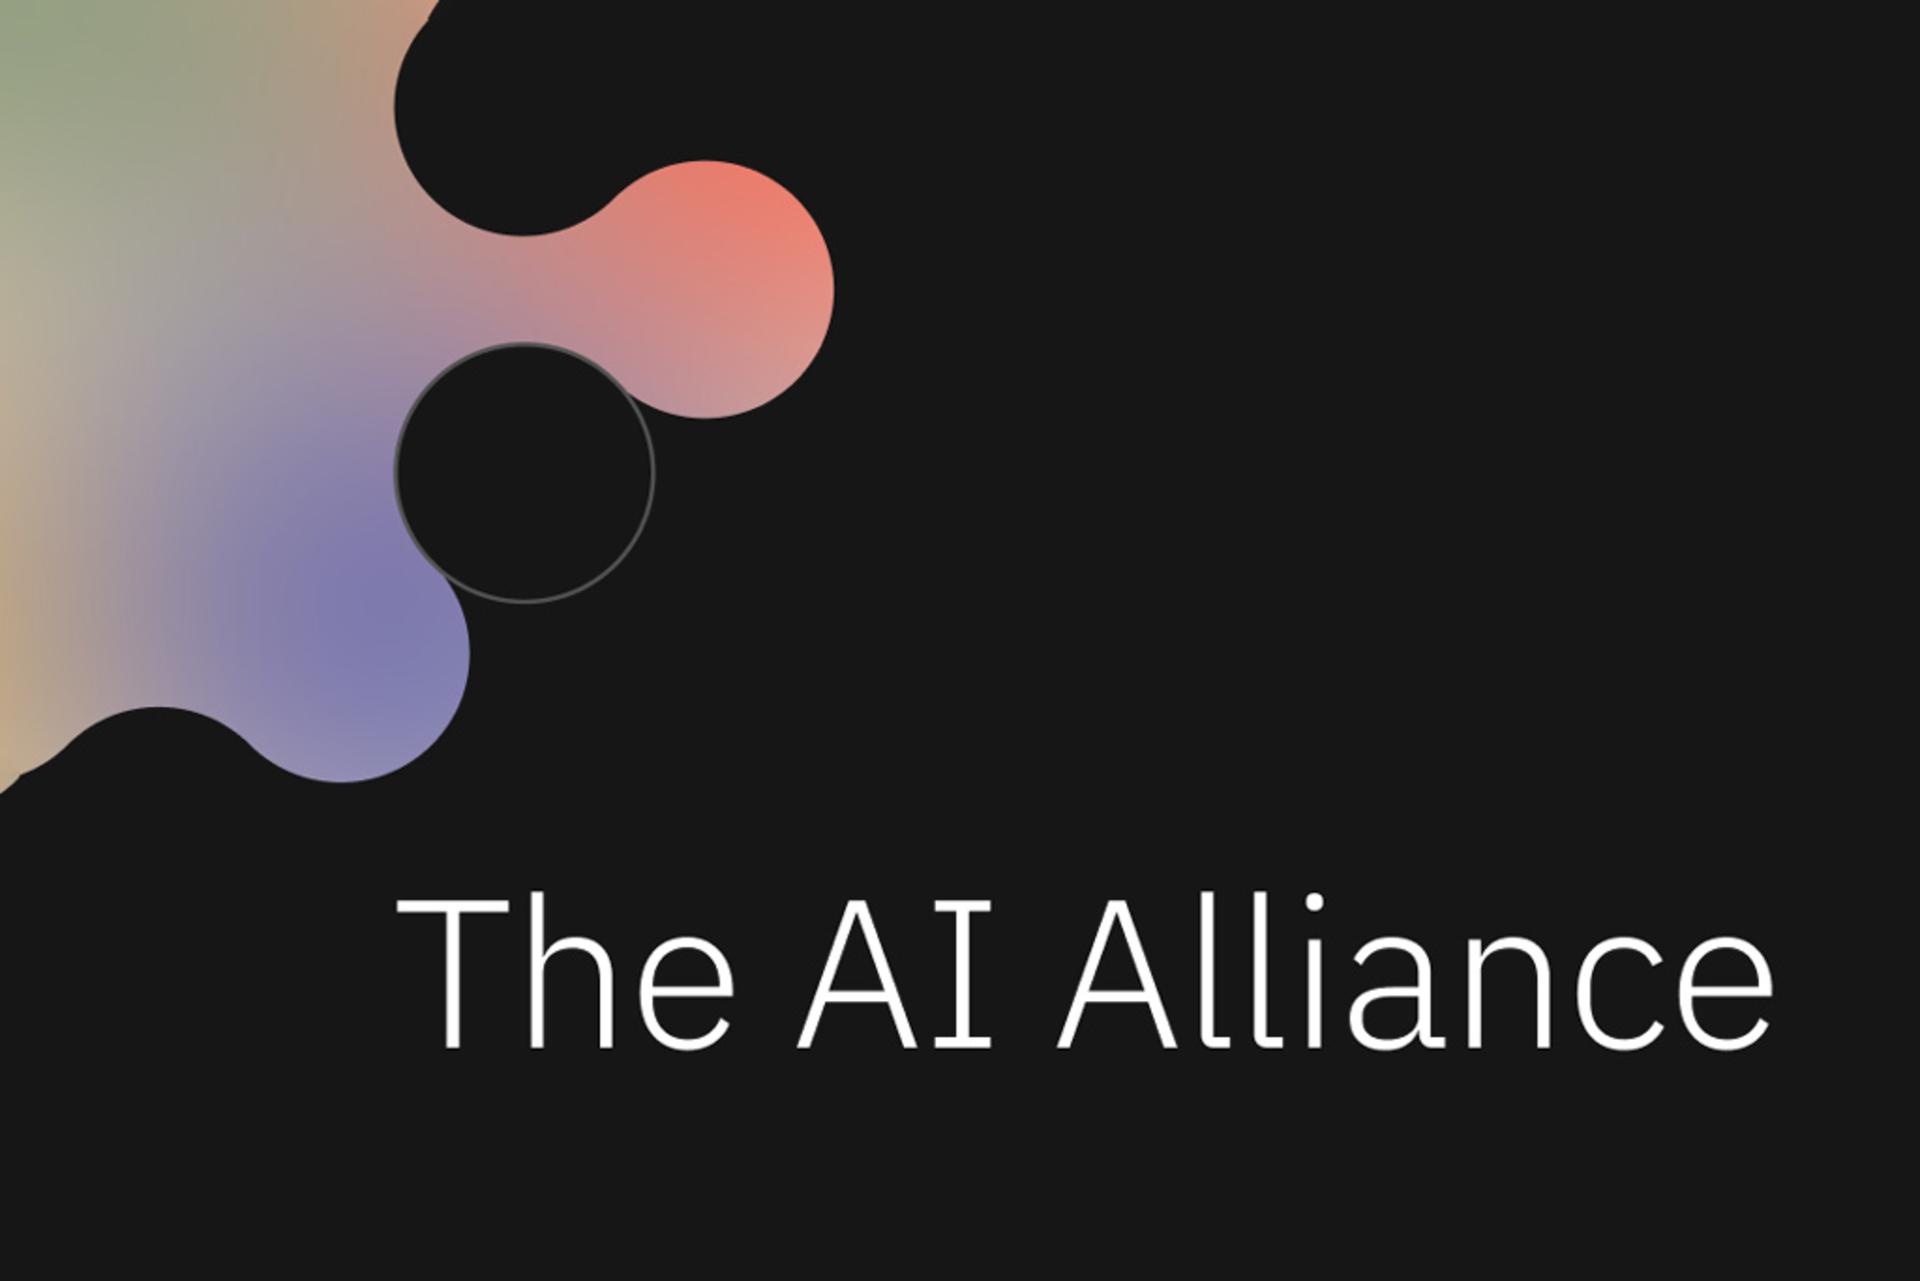 مرجع متخصصين ايران AI Alliance